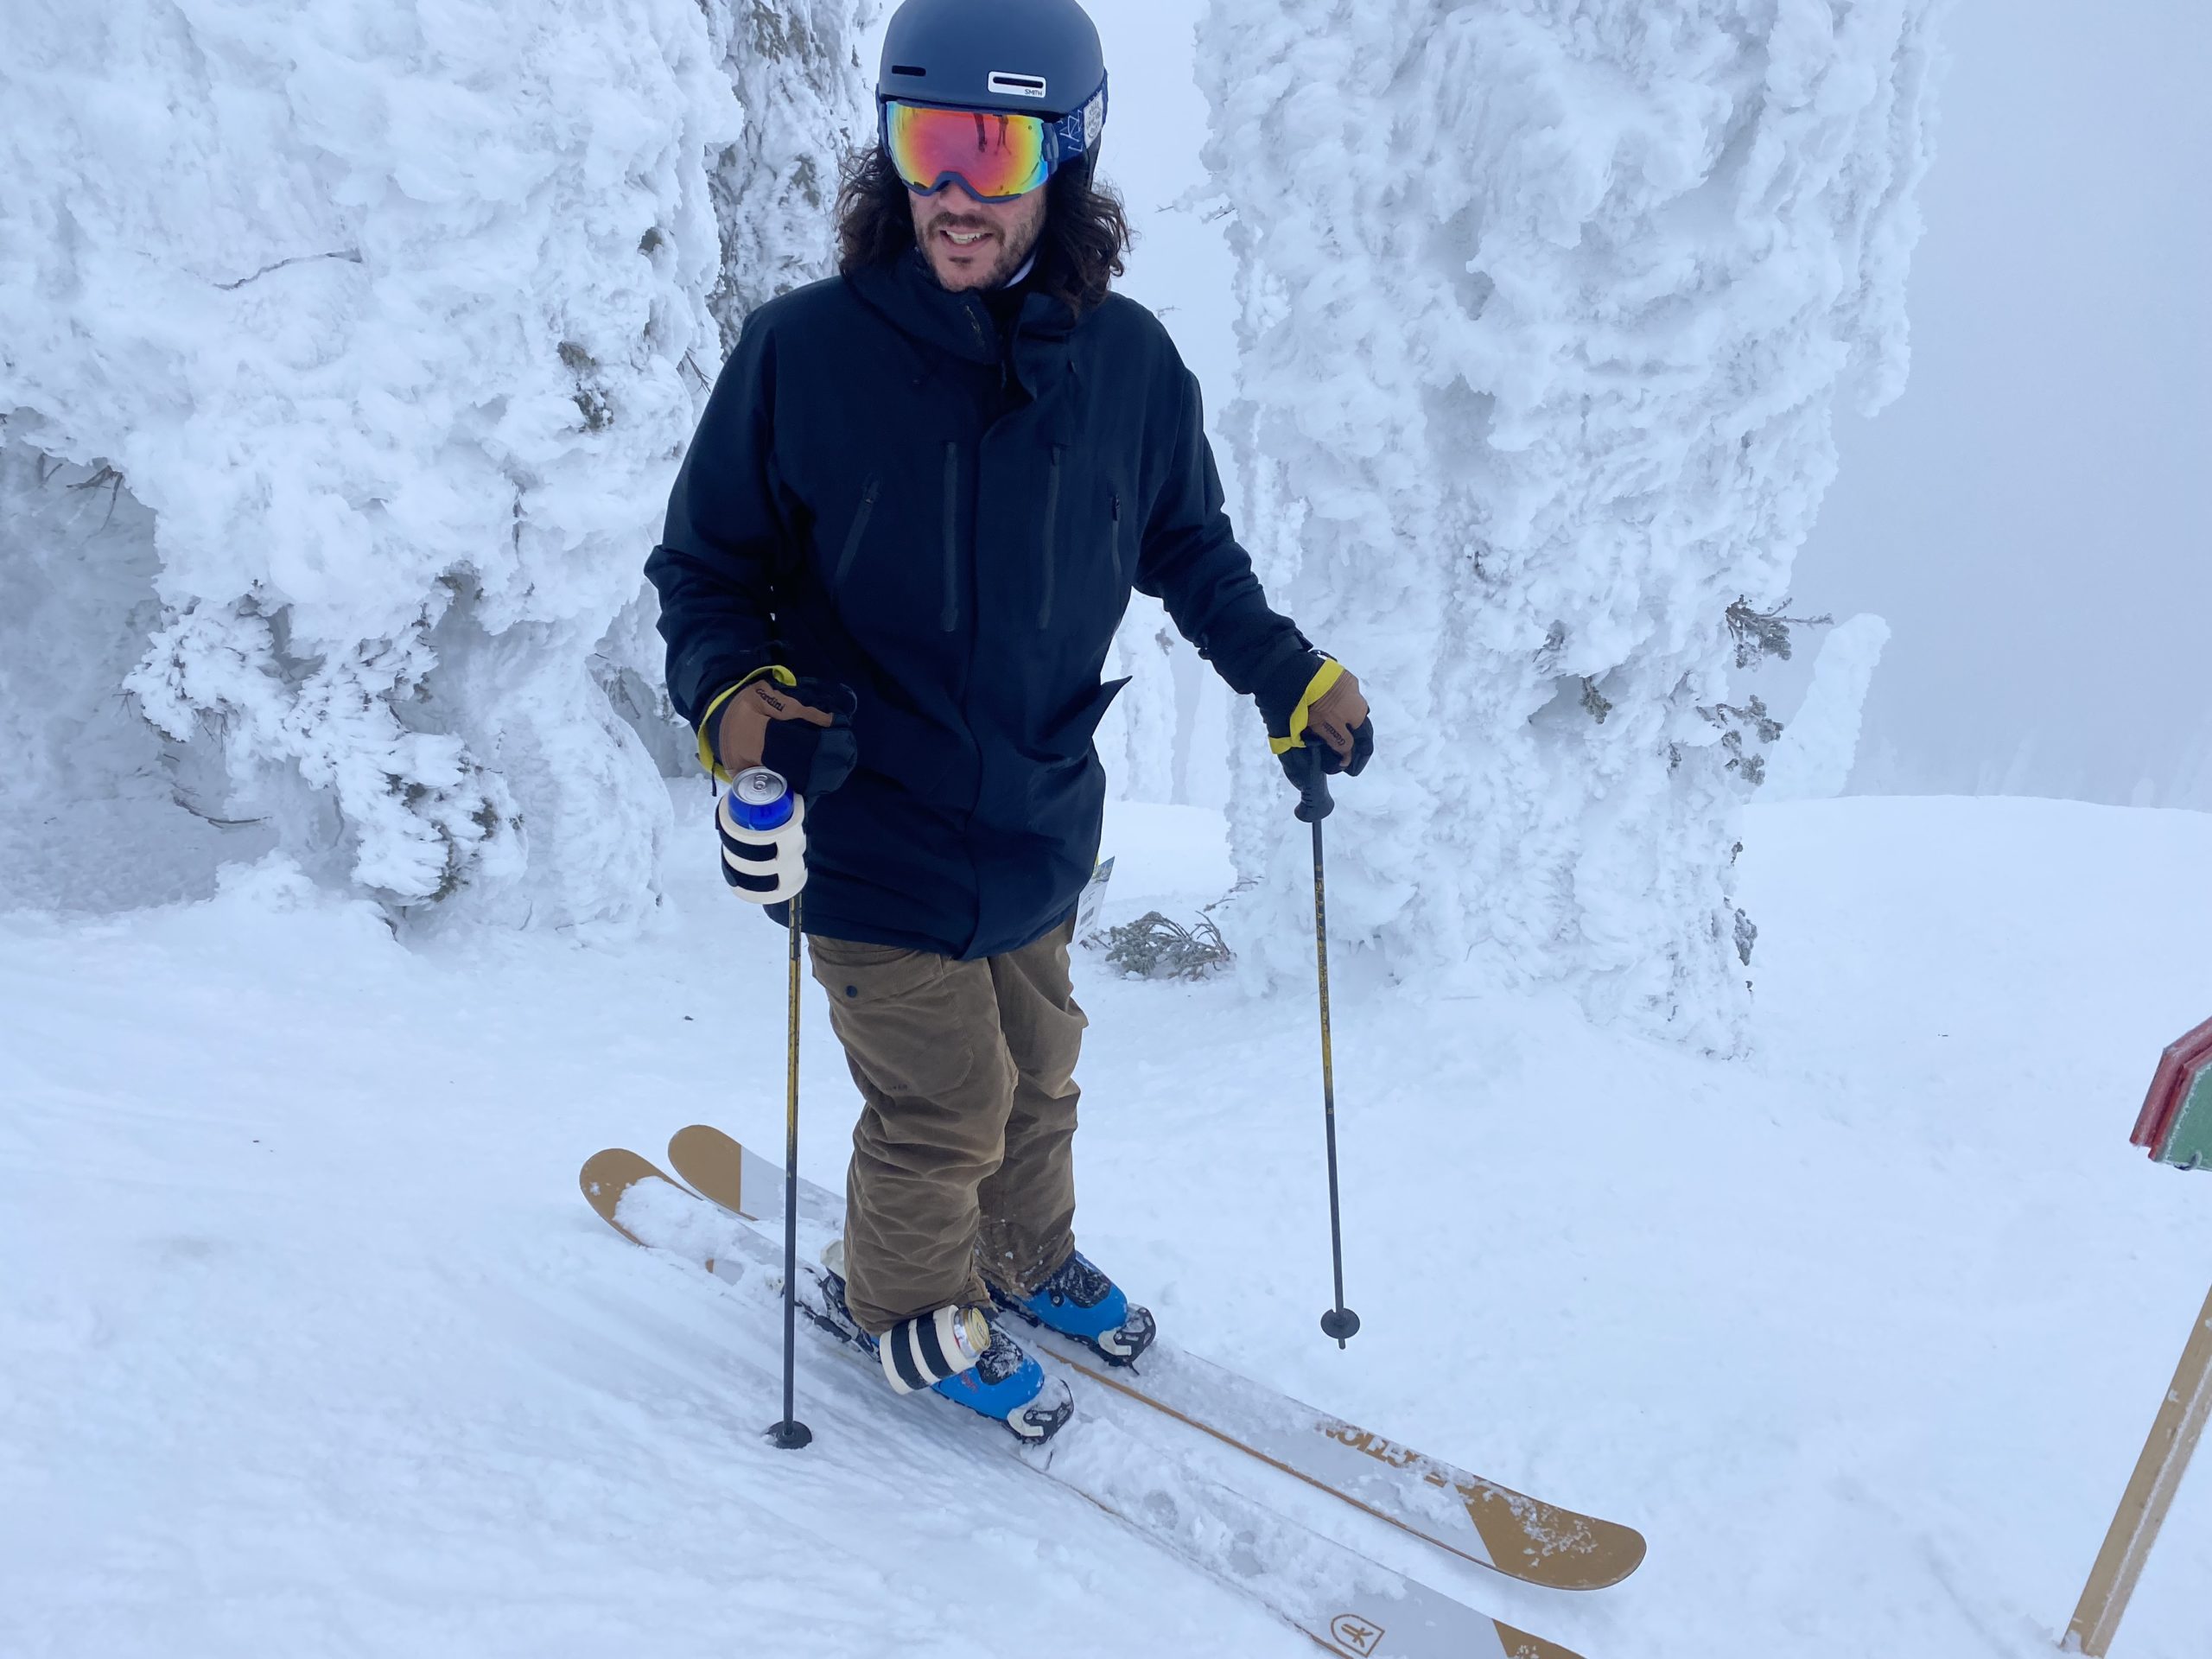 The BeerSki - Ski Pole & Snowboard Binding Beer Holder